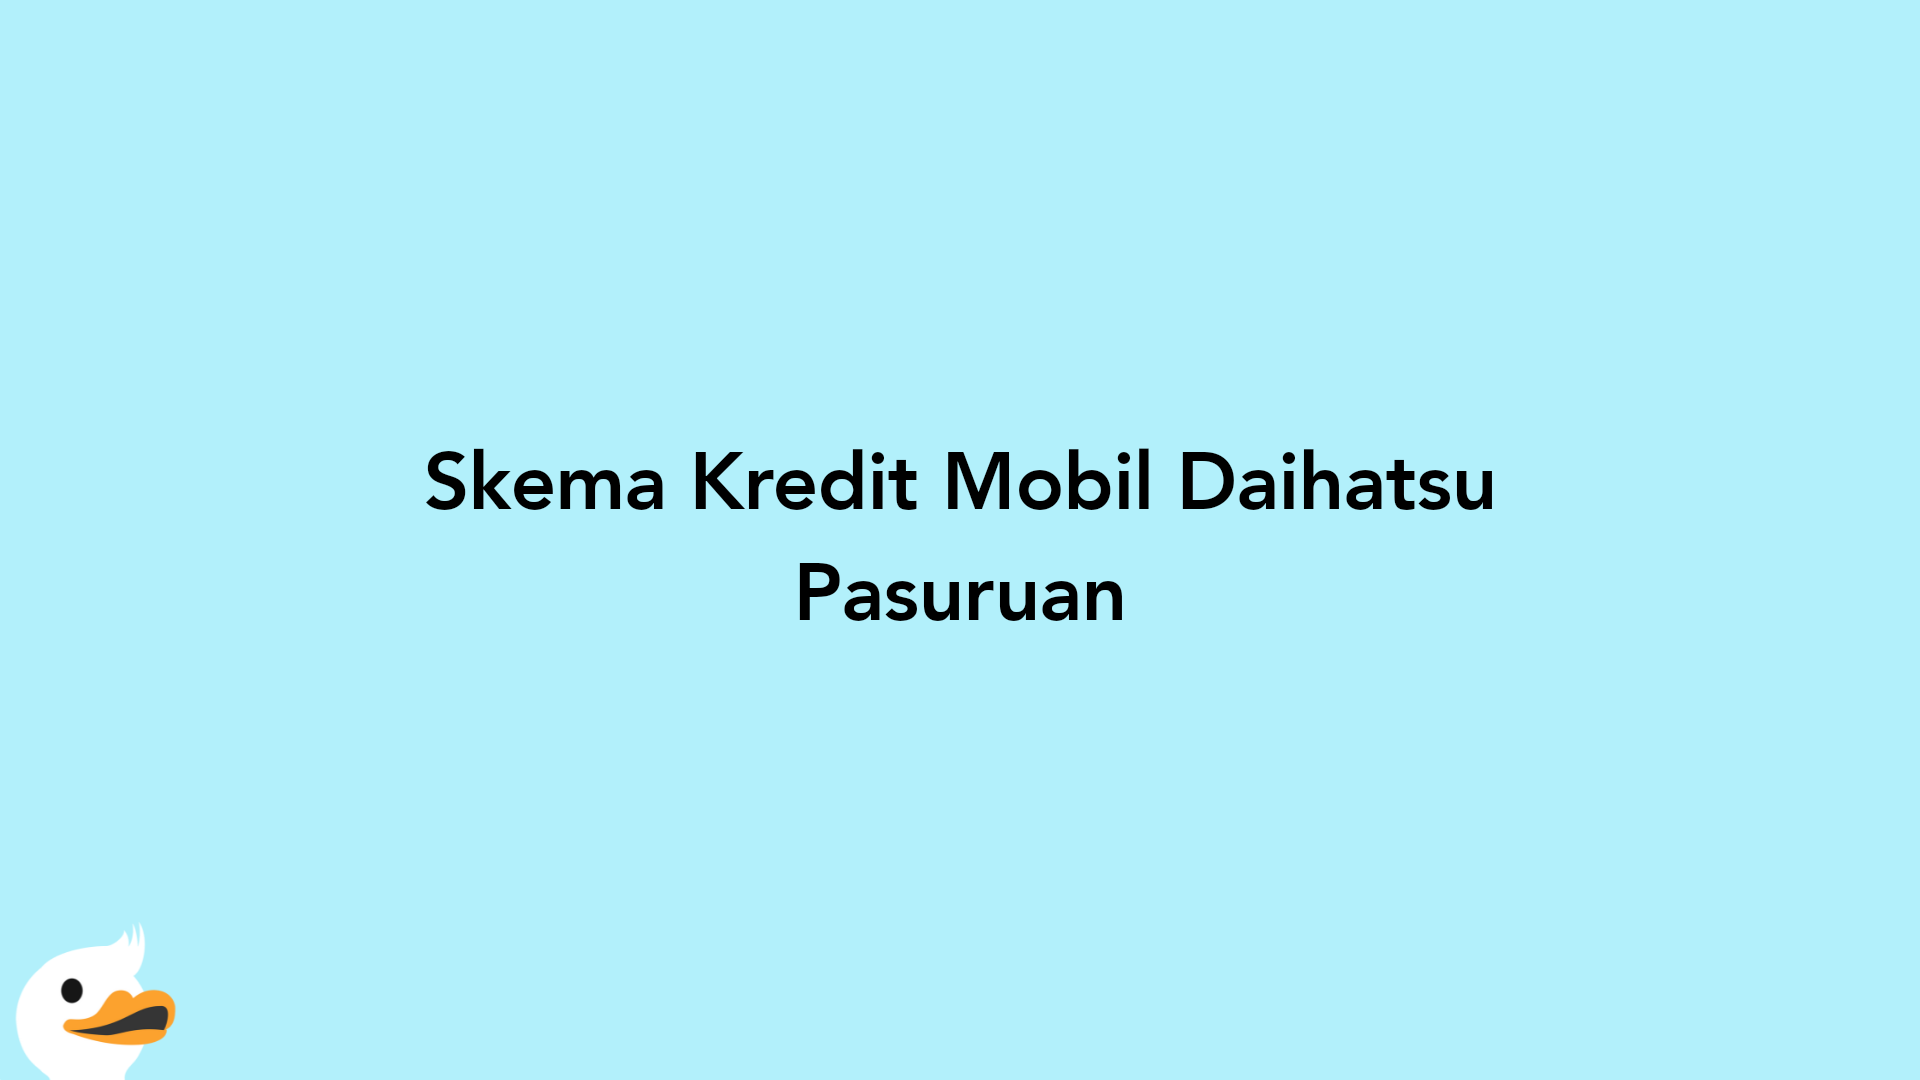 Skema Kredit Mobil Daihatsu Pasuruan